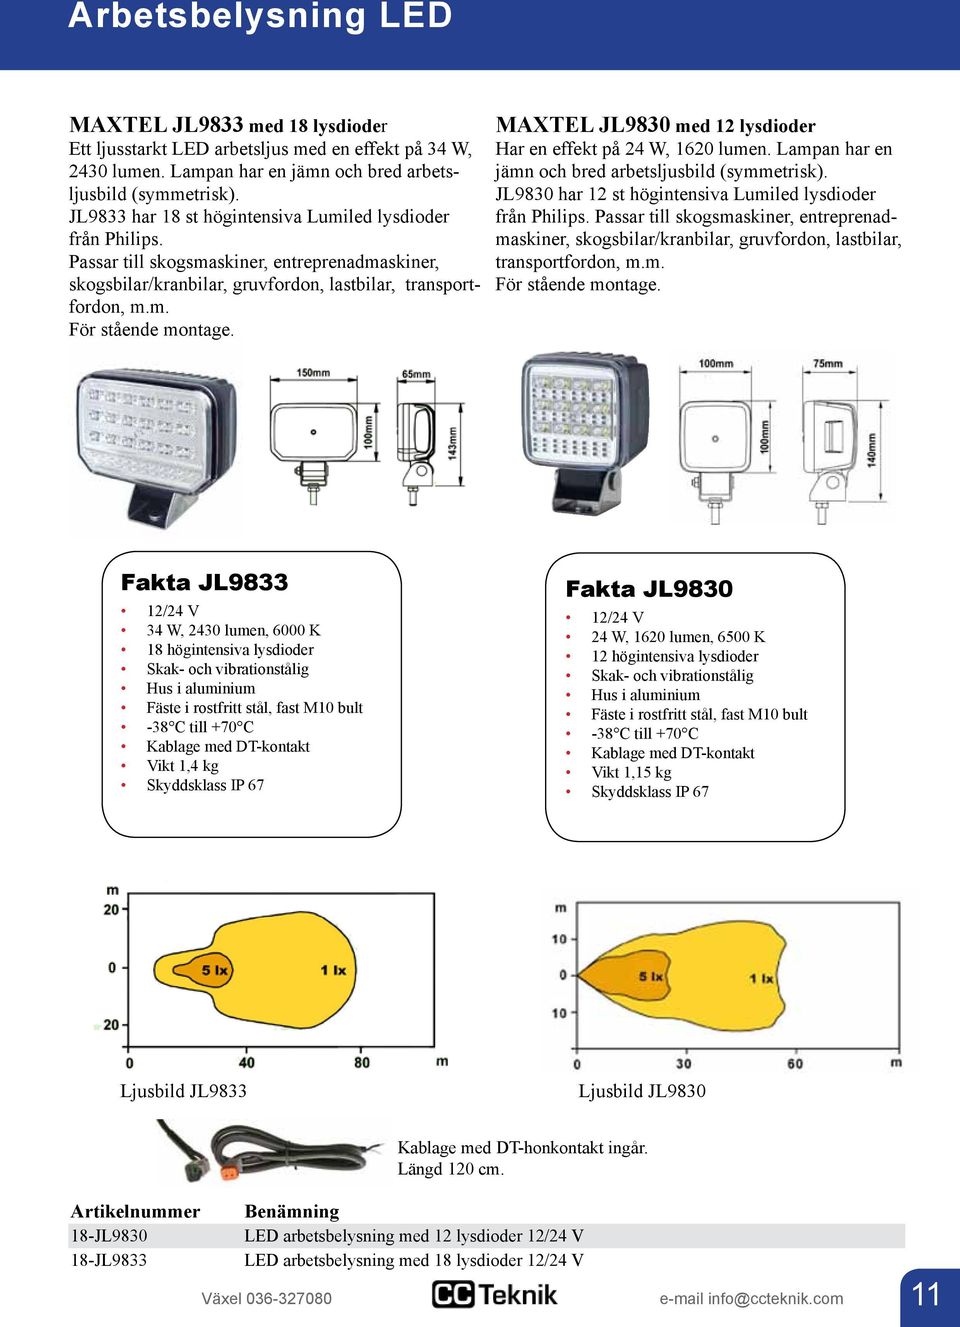 MAXTEL JL9830 med 12 lysdioder Har en effekt på 24 W, 1620 lumen. Lampan har en jämn och bred arbetsljusbild (symmetrisk). JL9830 har 12 st högintensiva Lumiled lysdioder från Philips.